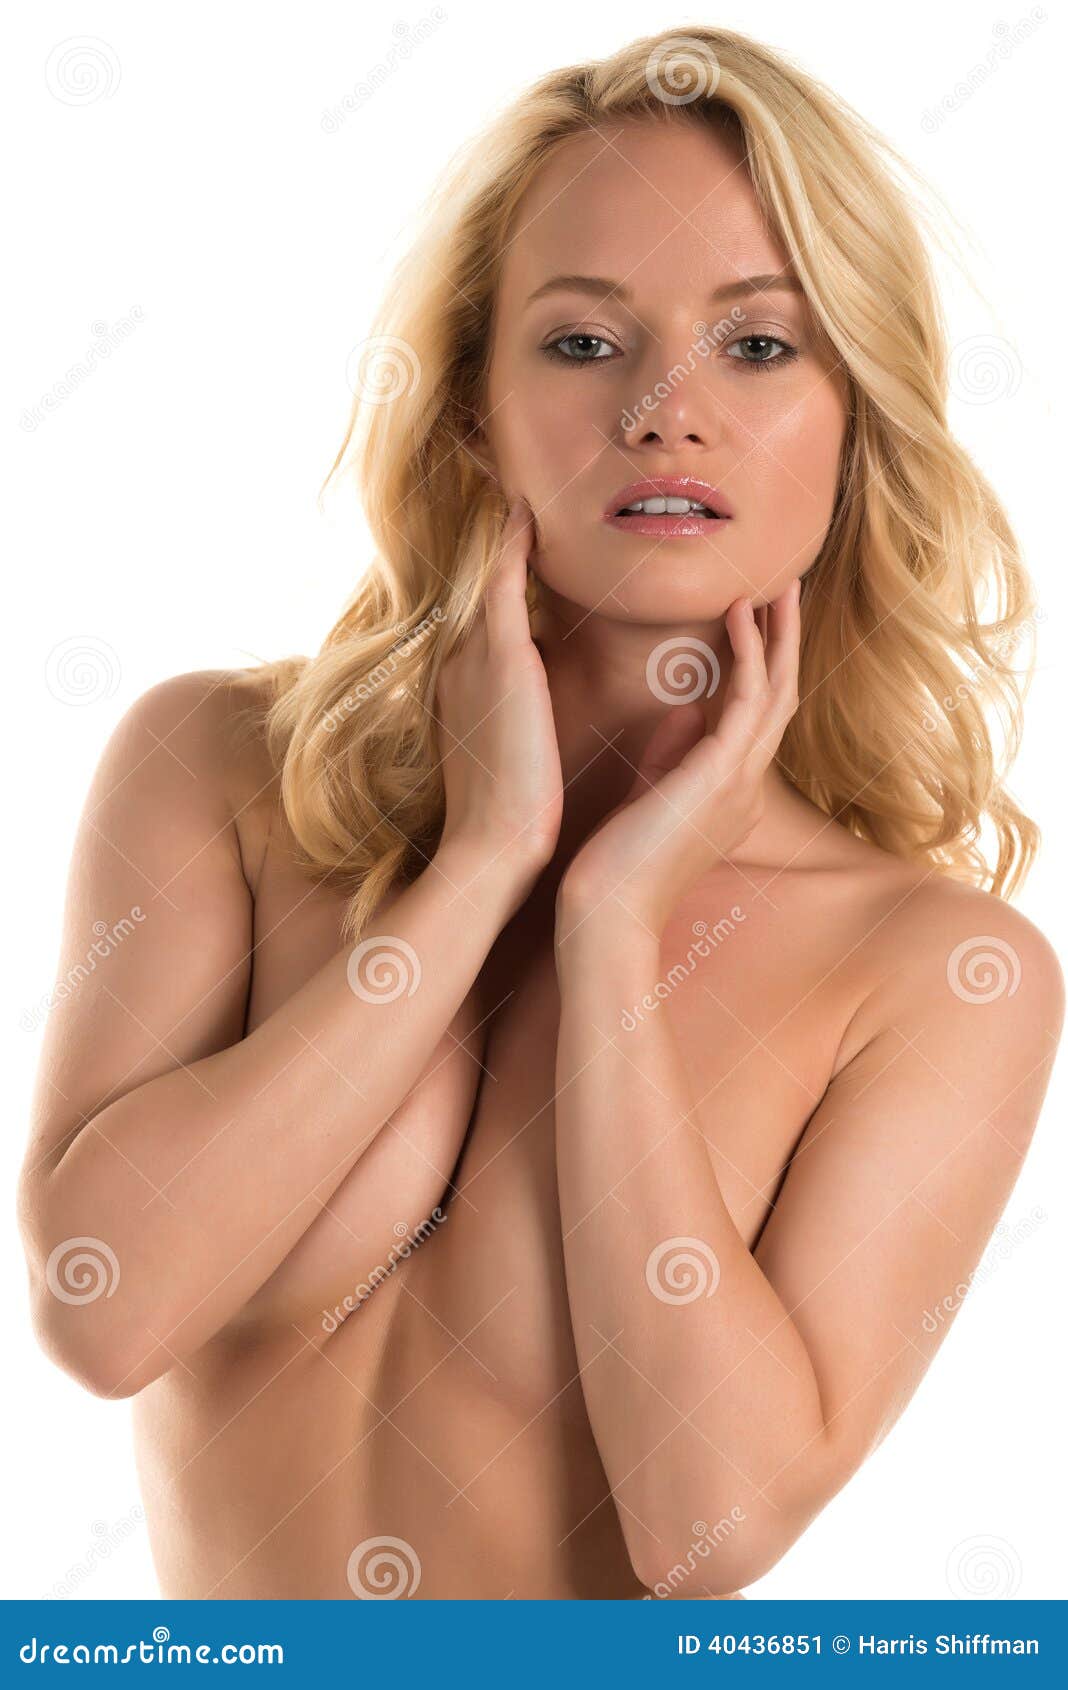 Nude Hungarian Women